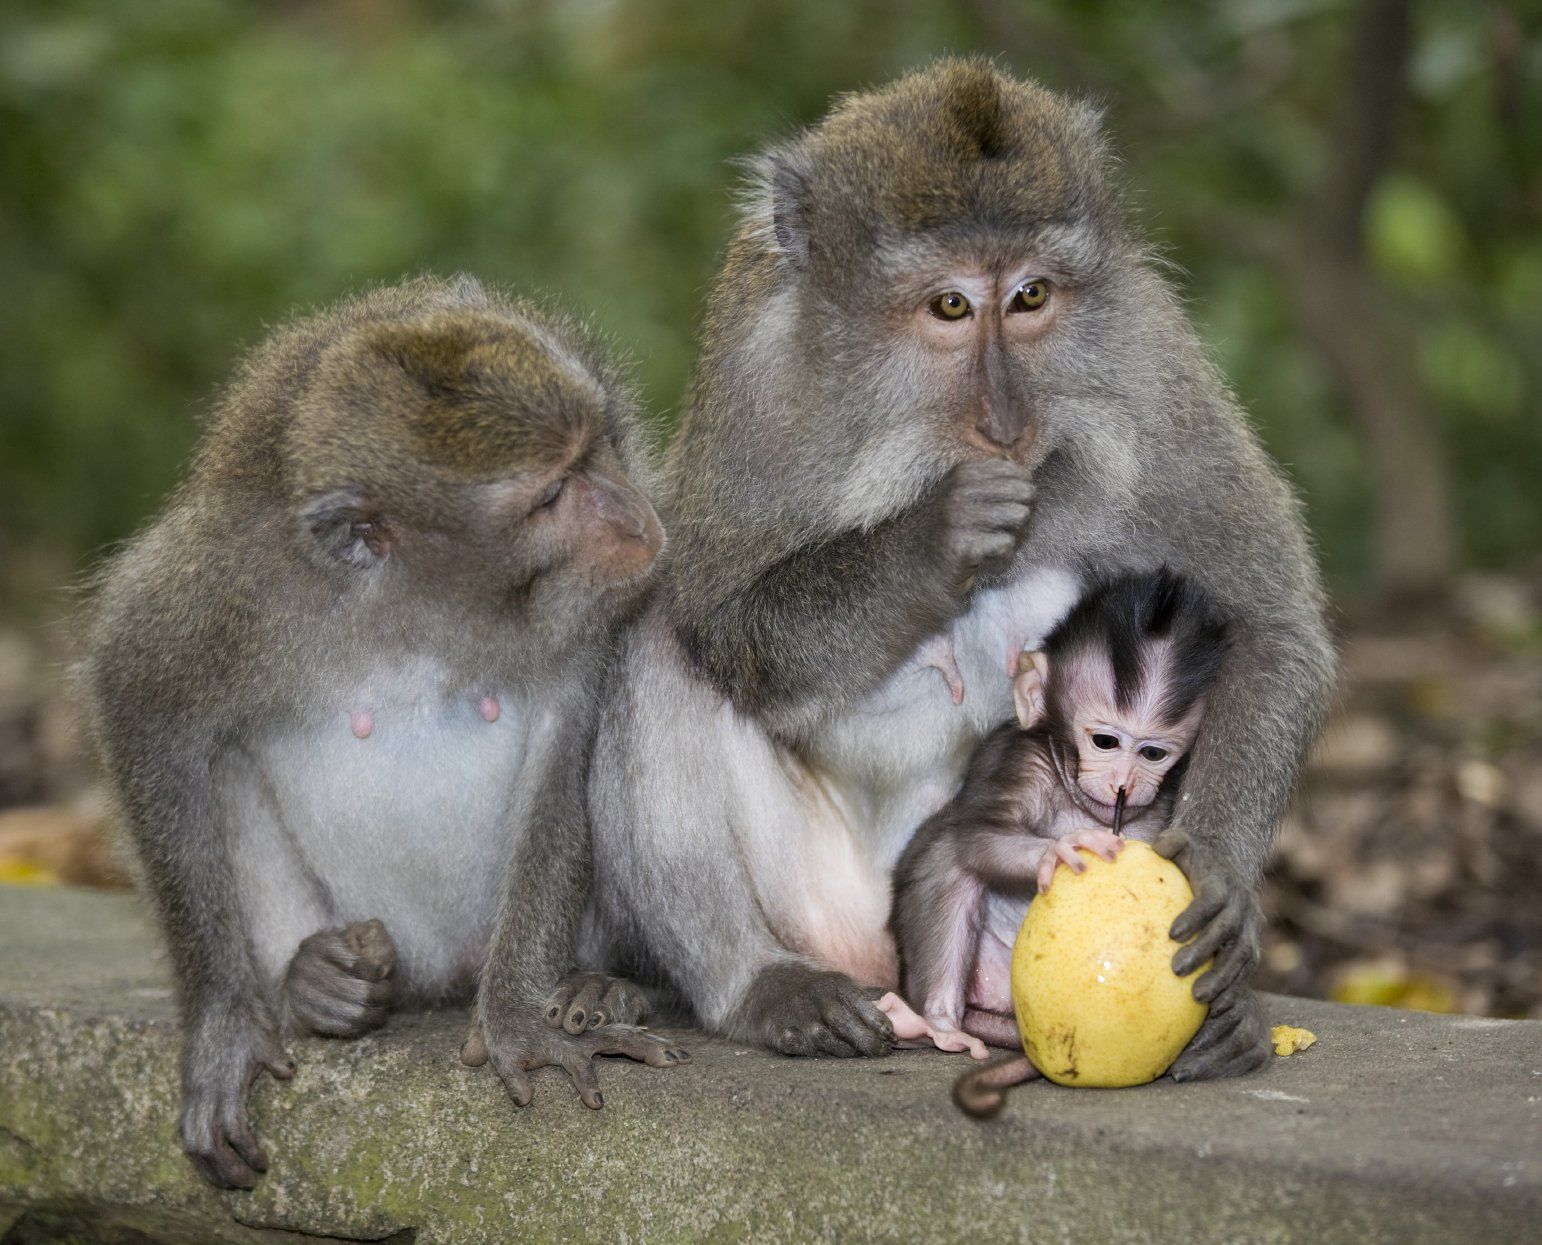 Affeneltern beschützen ihr Junges liebevoll. Das ist ein Foto aus der Kursbeschreibung Tierfotografie 1 bei Fotokurs Nürnberg.